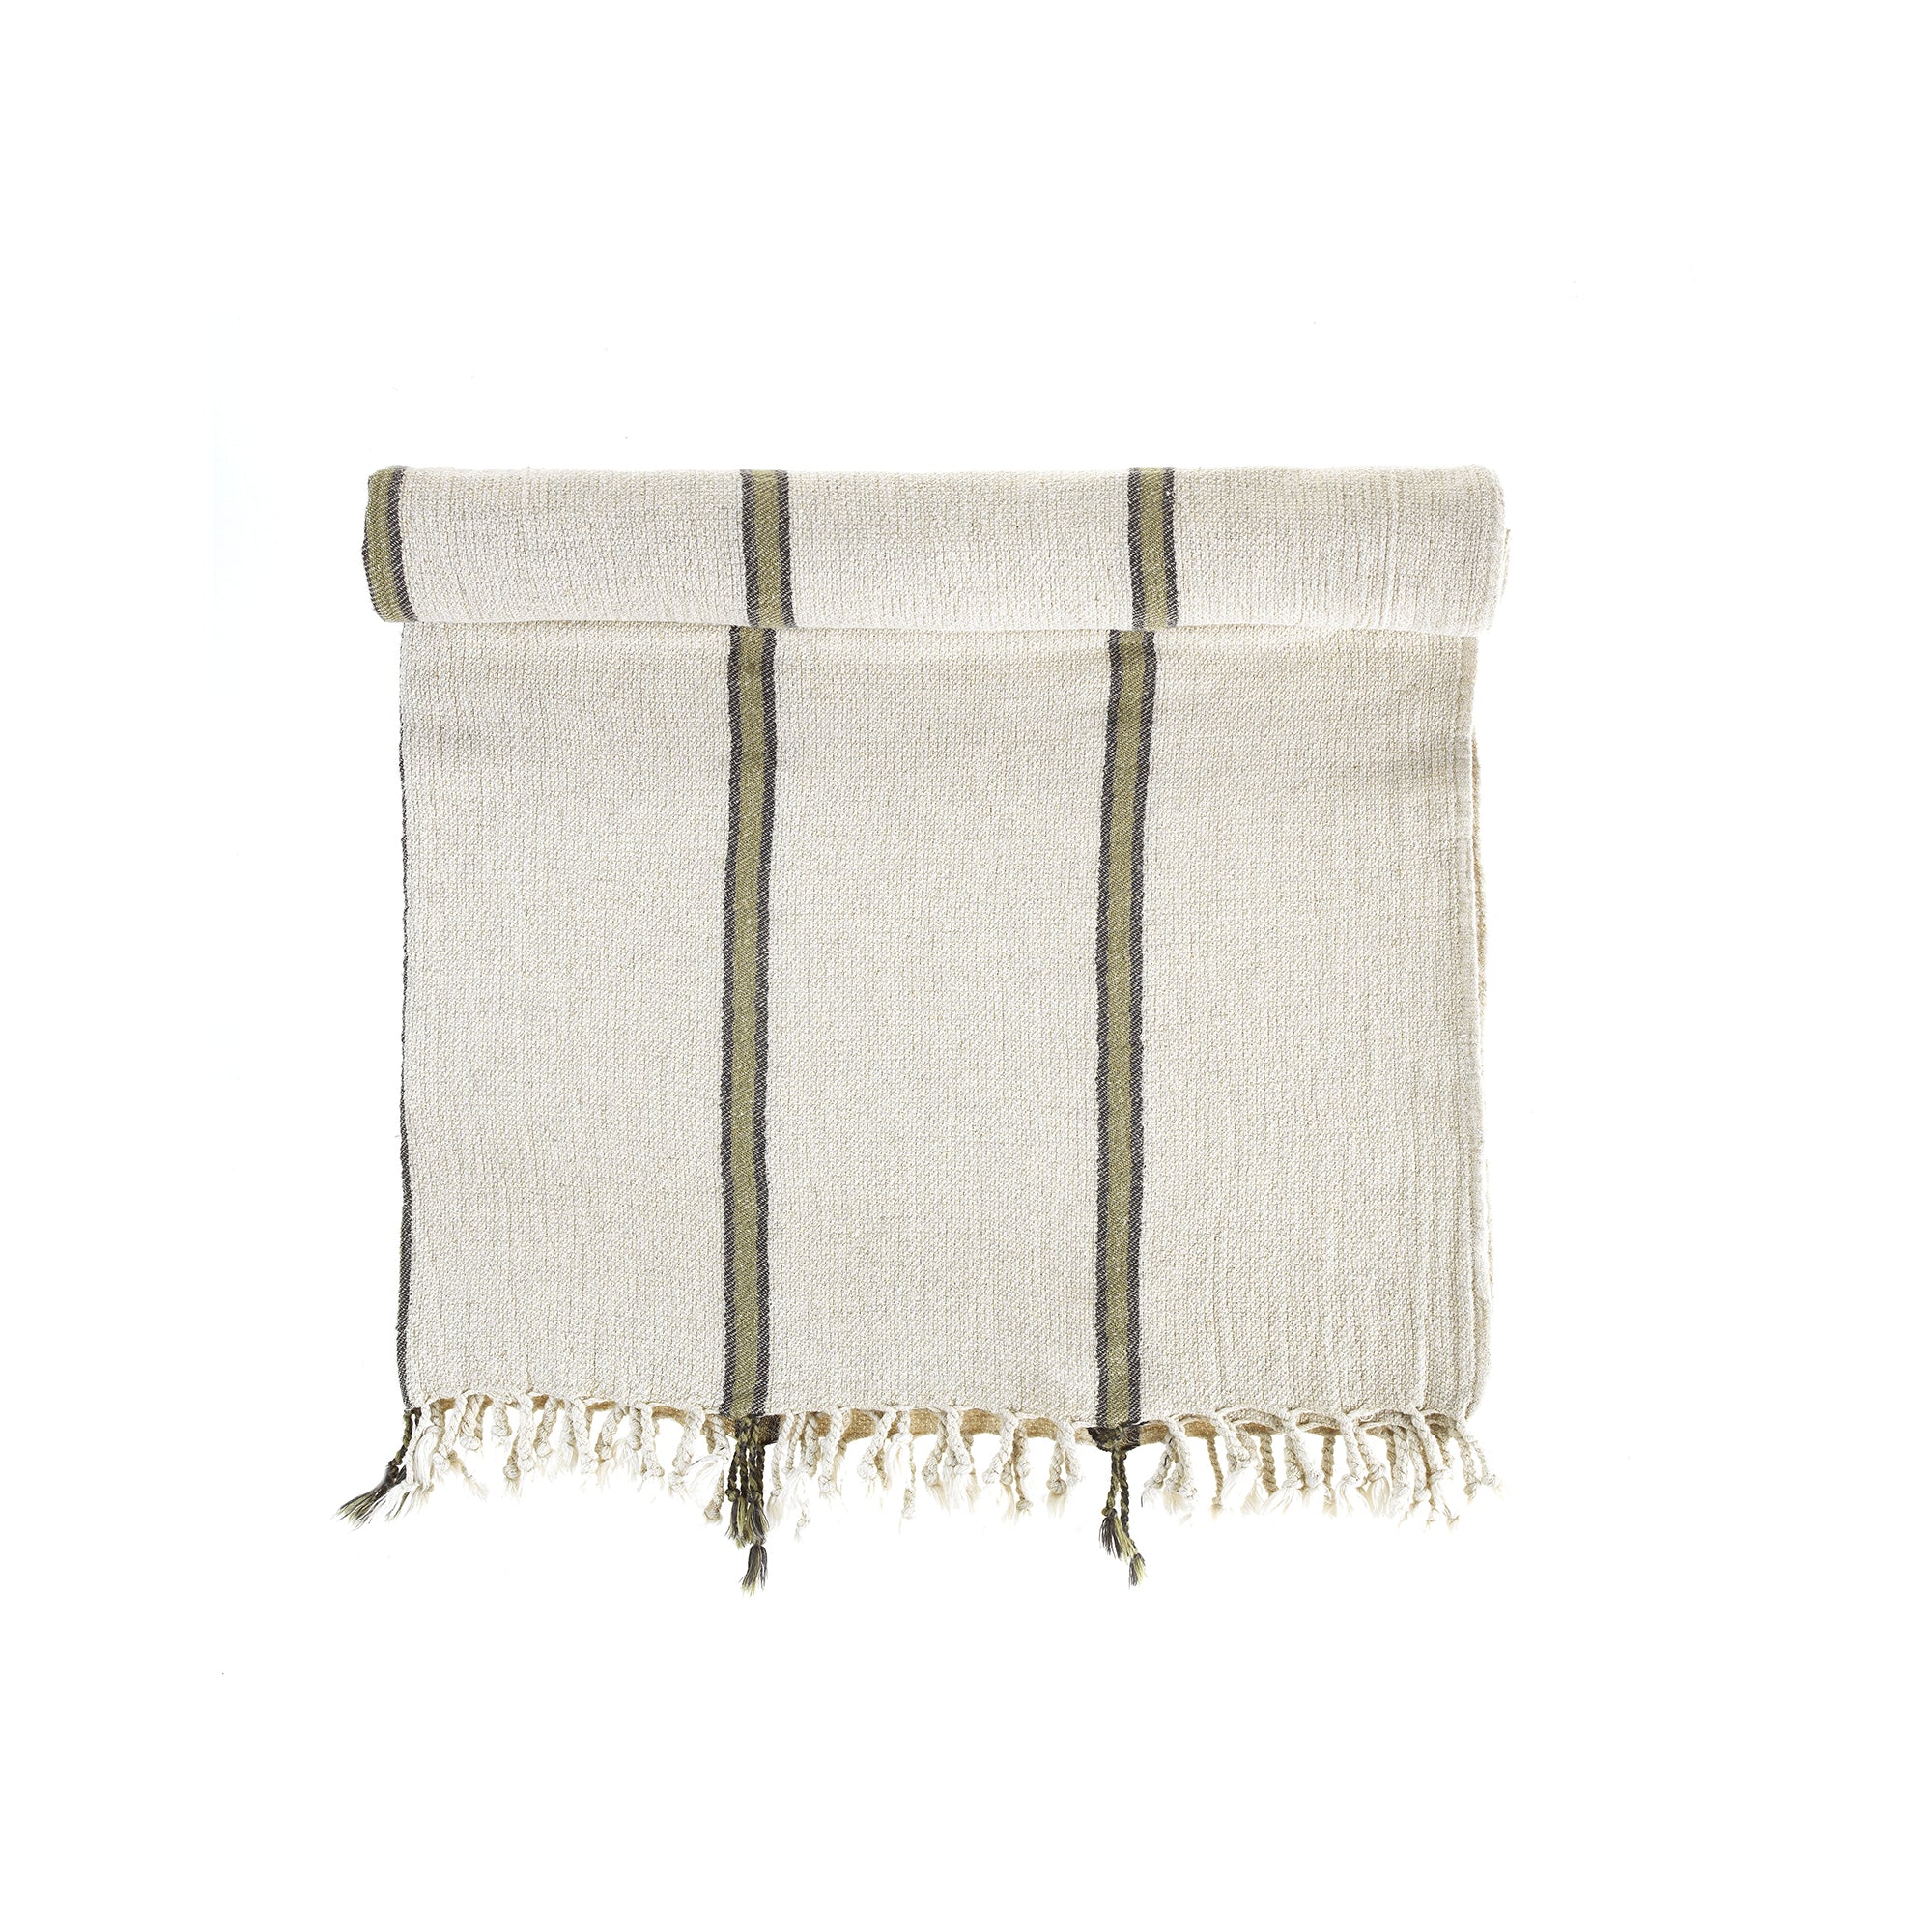 Smyrna Linen Turkish Towel